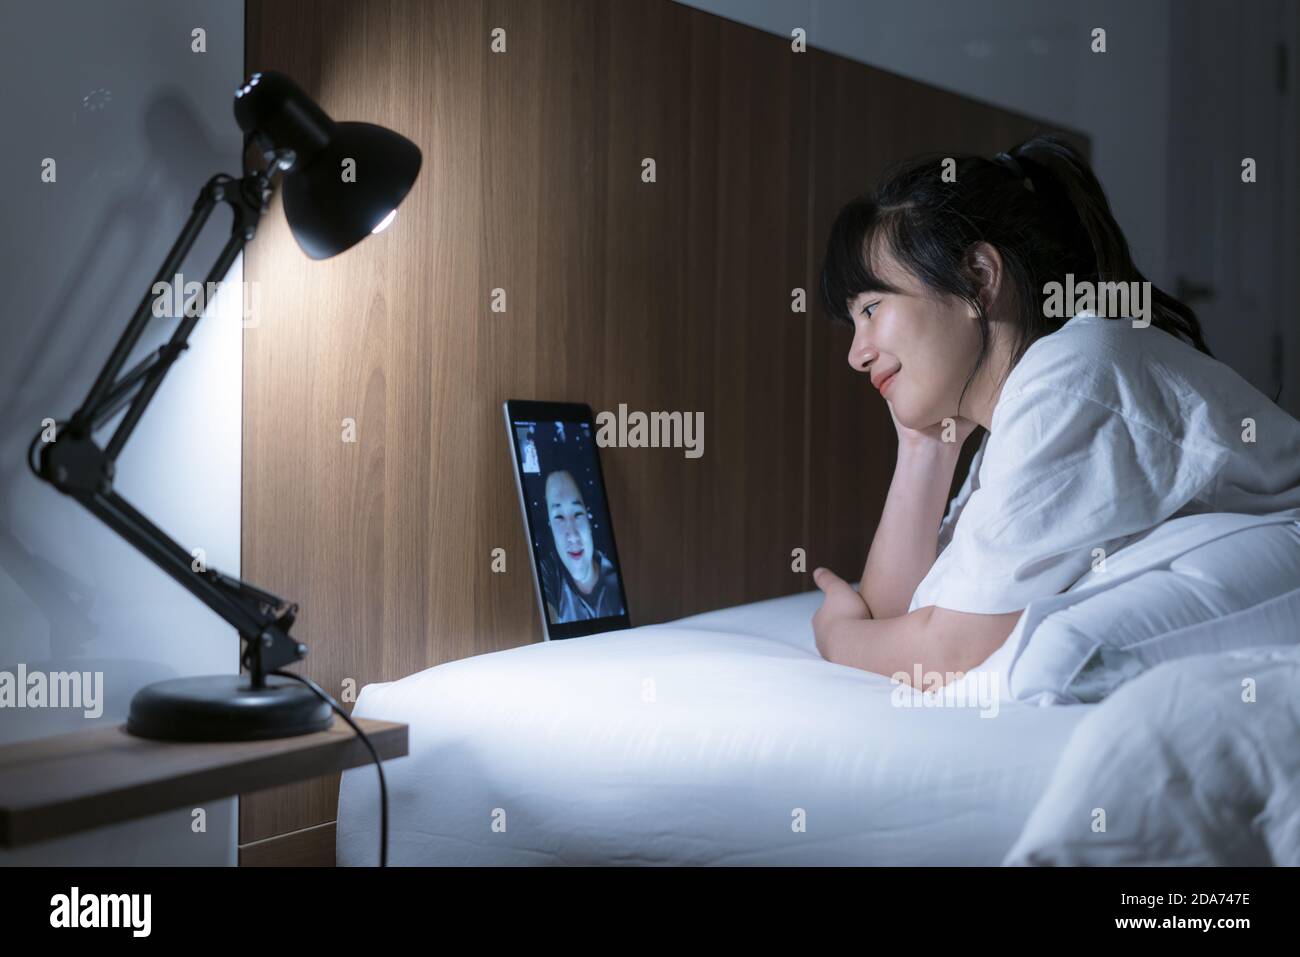 Femme asiatique virtuelle Happy Hour réunion en ligne avec son petit ami en visioconférence à bonne nuit avant de dormir la nuit avec une tablette numérique Banque D'Images